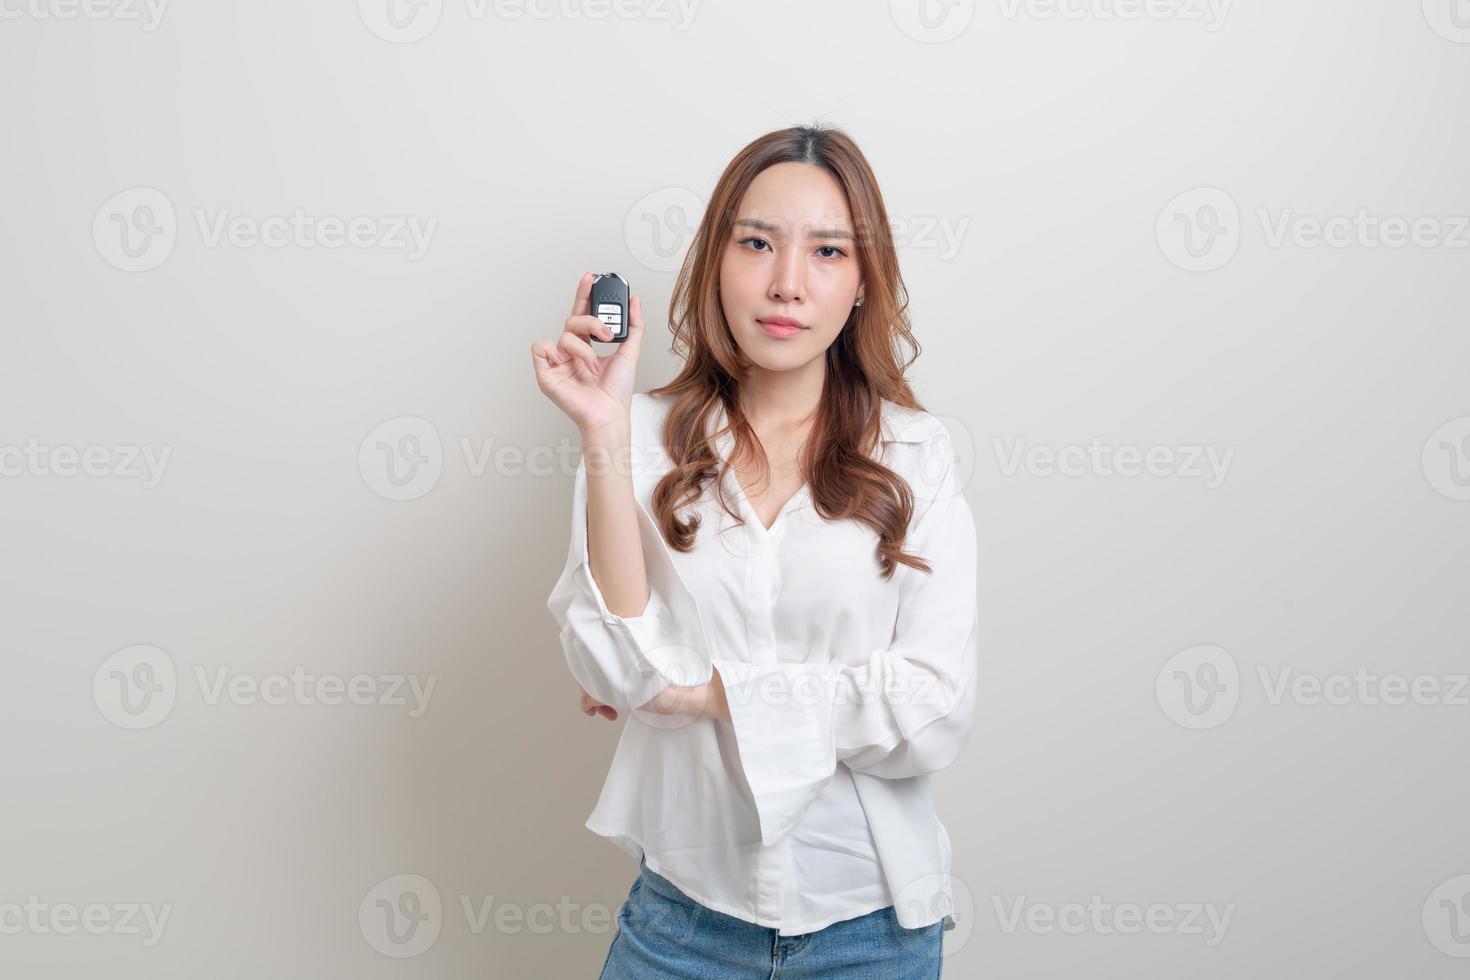 retrato linda mulher asiática segurando a chave do carro no fundo branco foto